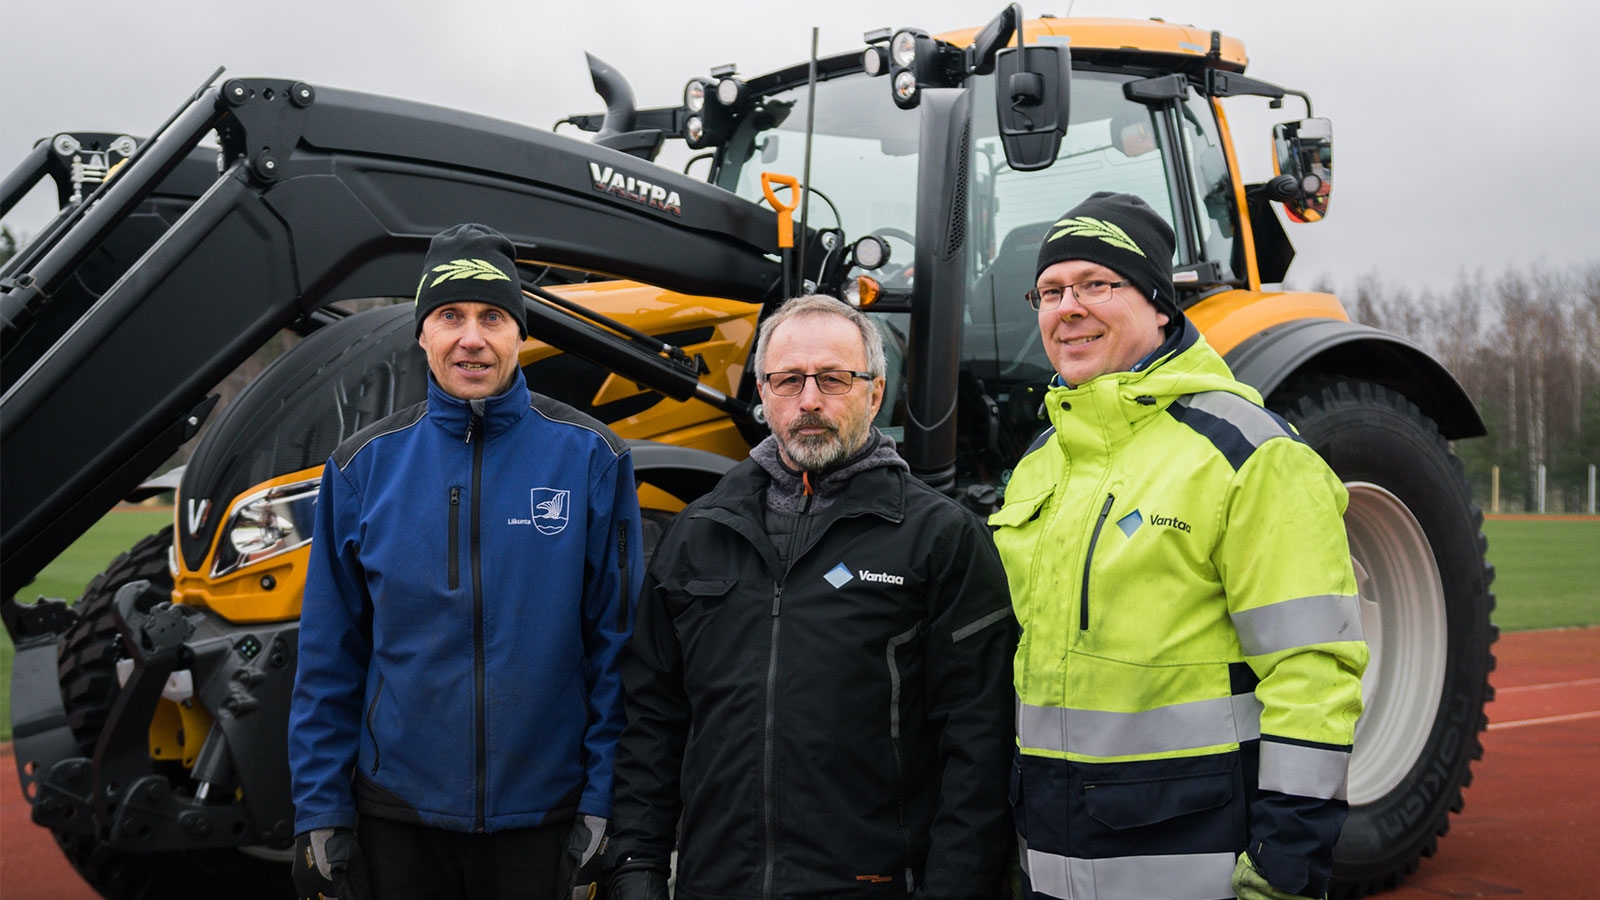 Vantaa kaupunki luottaa Valtra-traktoreihin liikuntapaikkojen ylläpidossa.